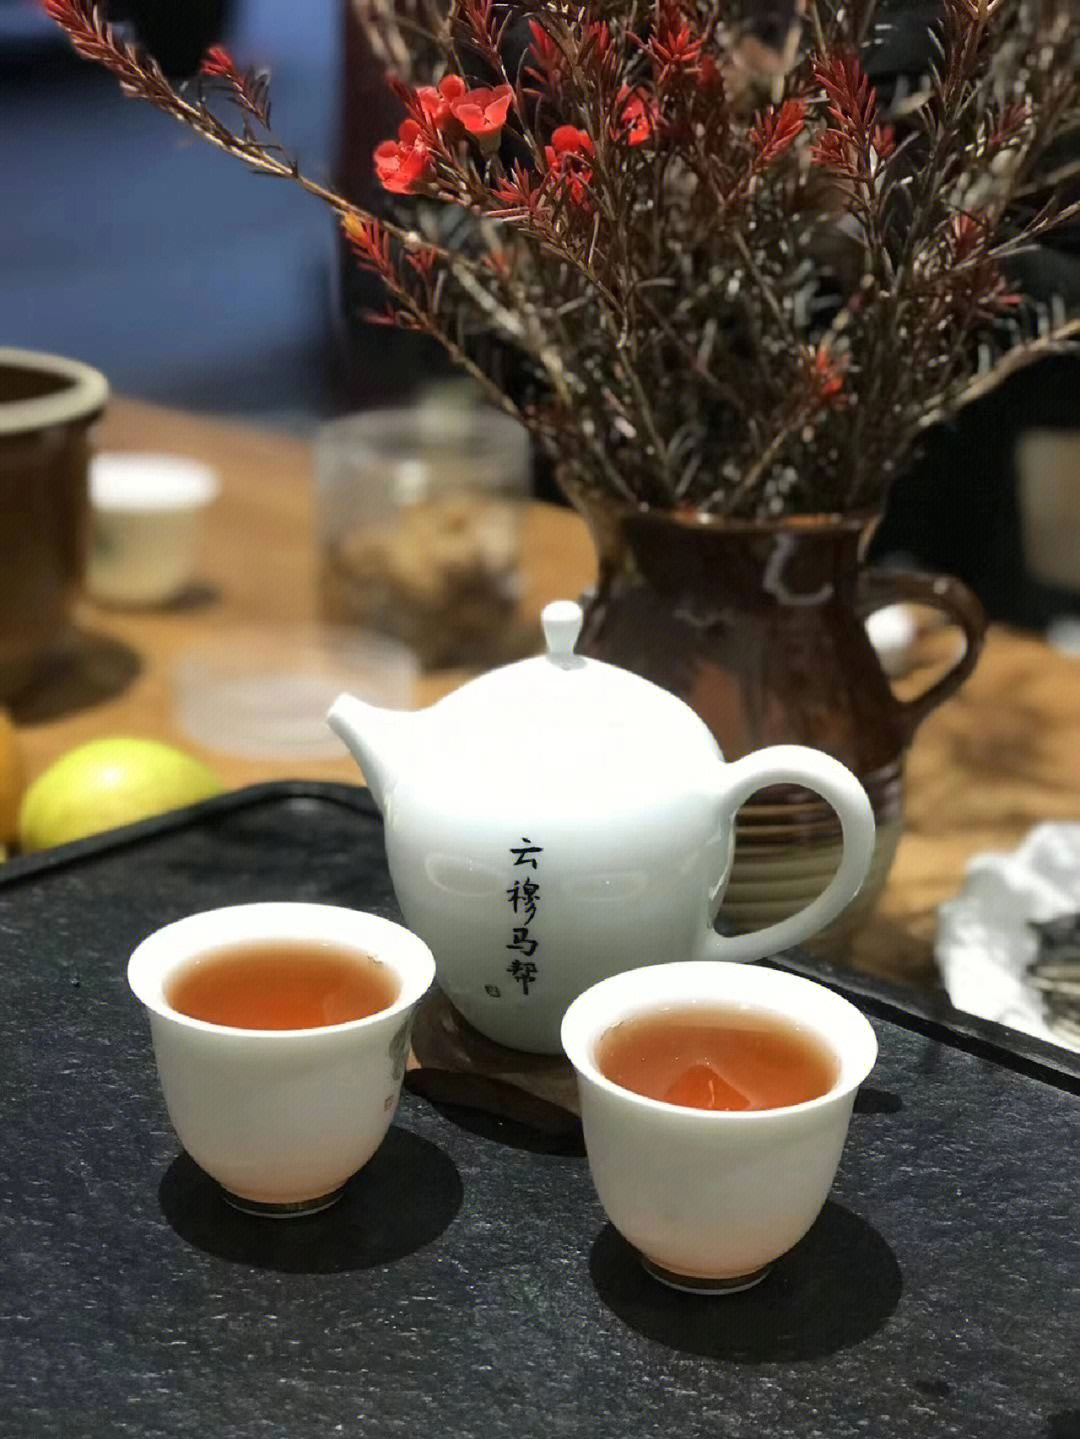 茶茶本人照片曝光图片